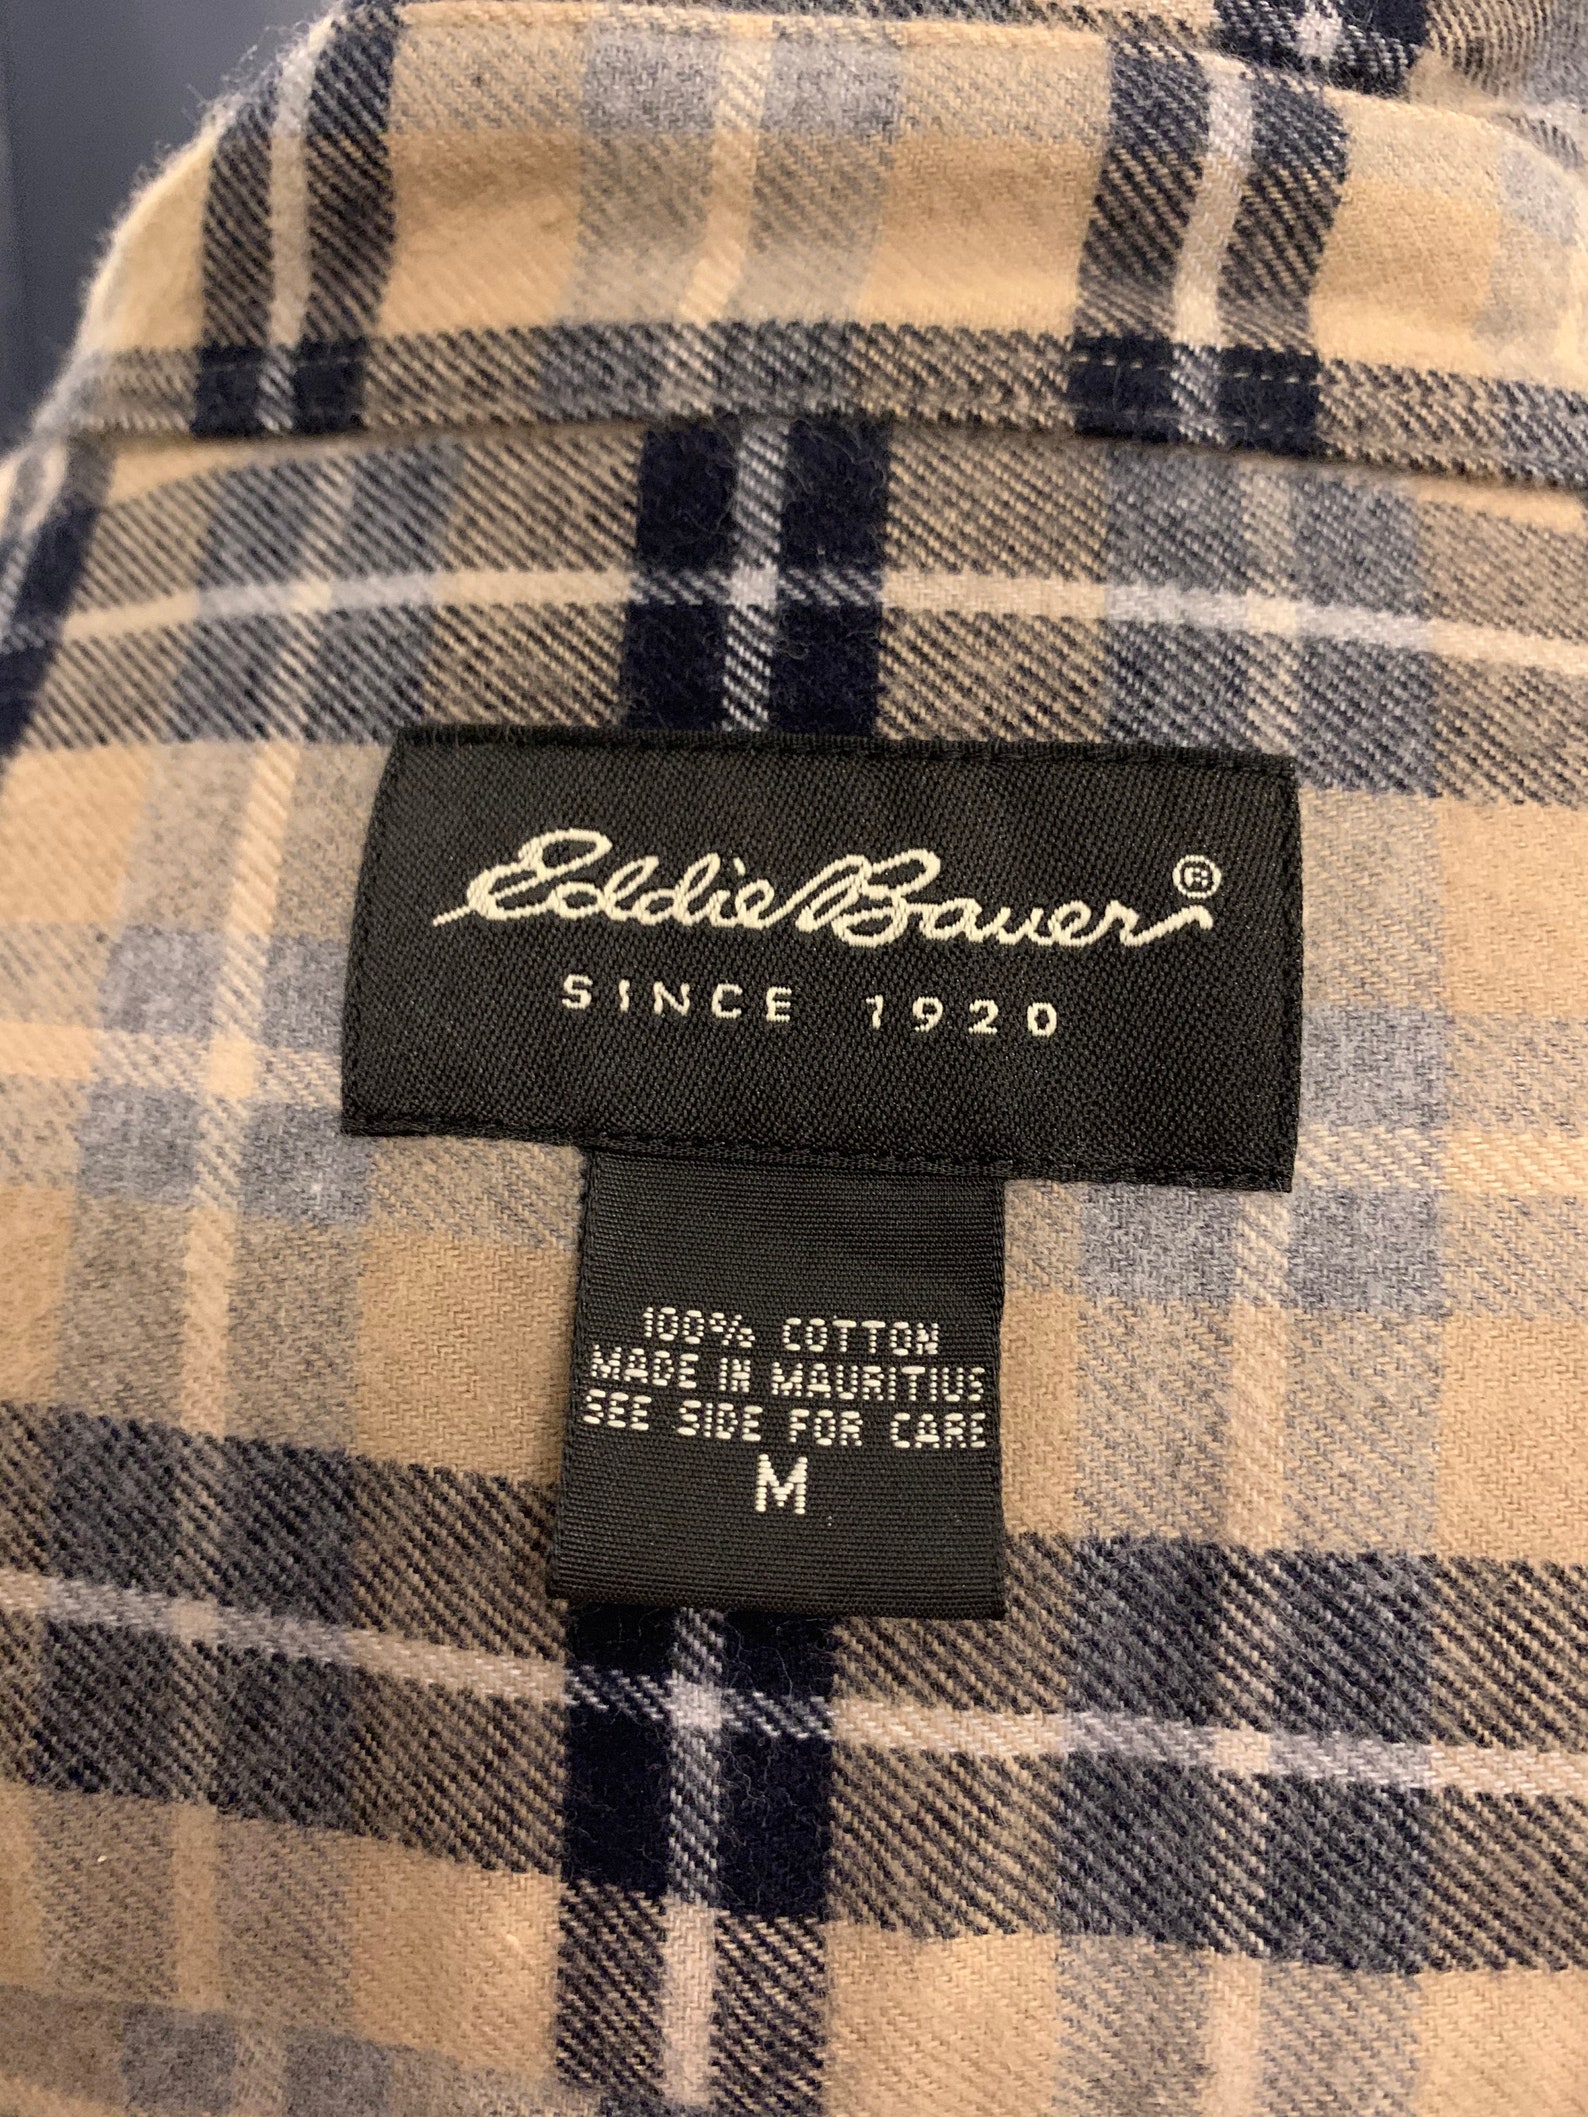 EDDIE BAUER Vintage Beige PLAID Shirt Size M - Etsy